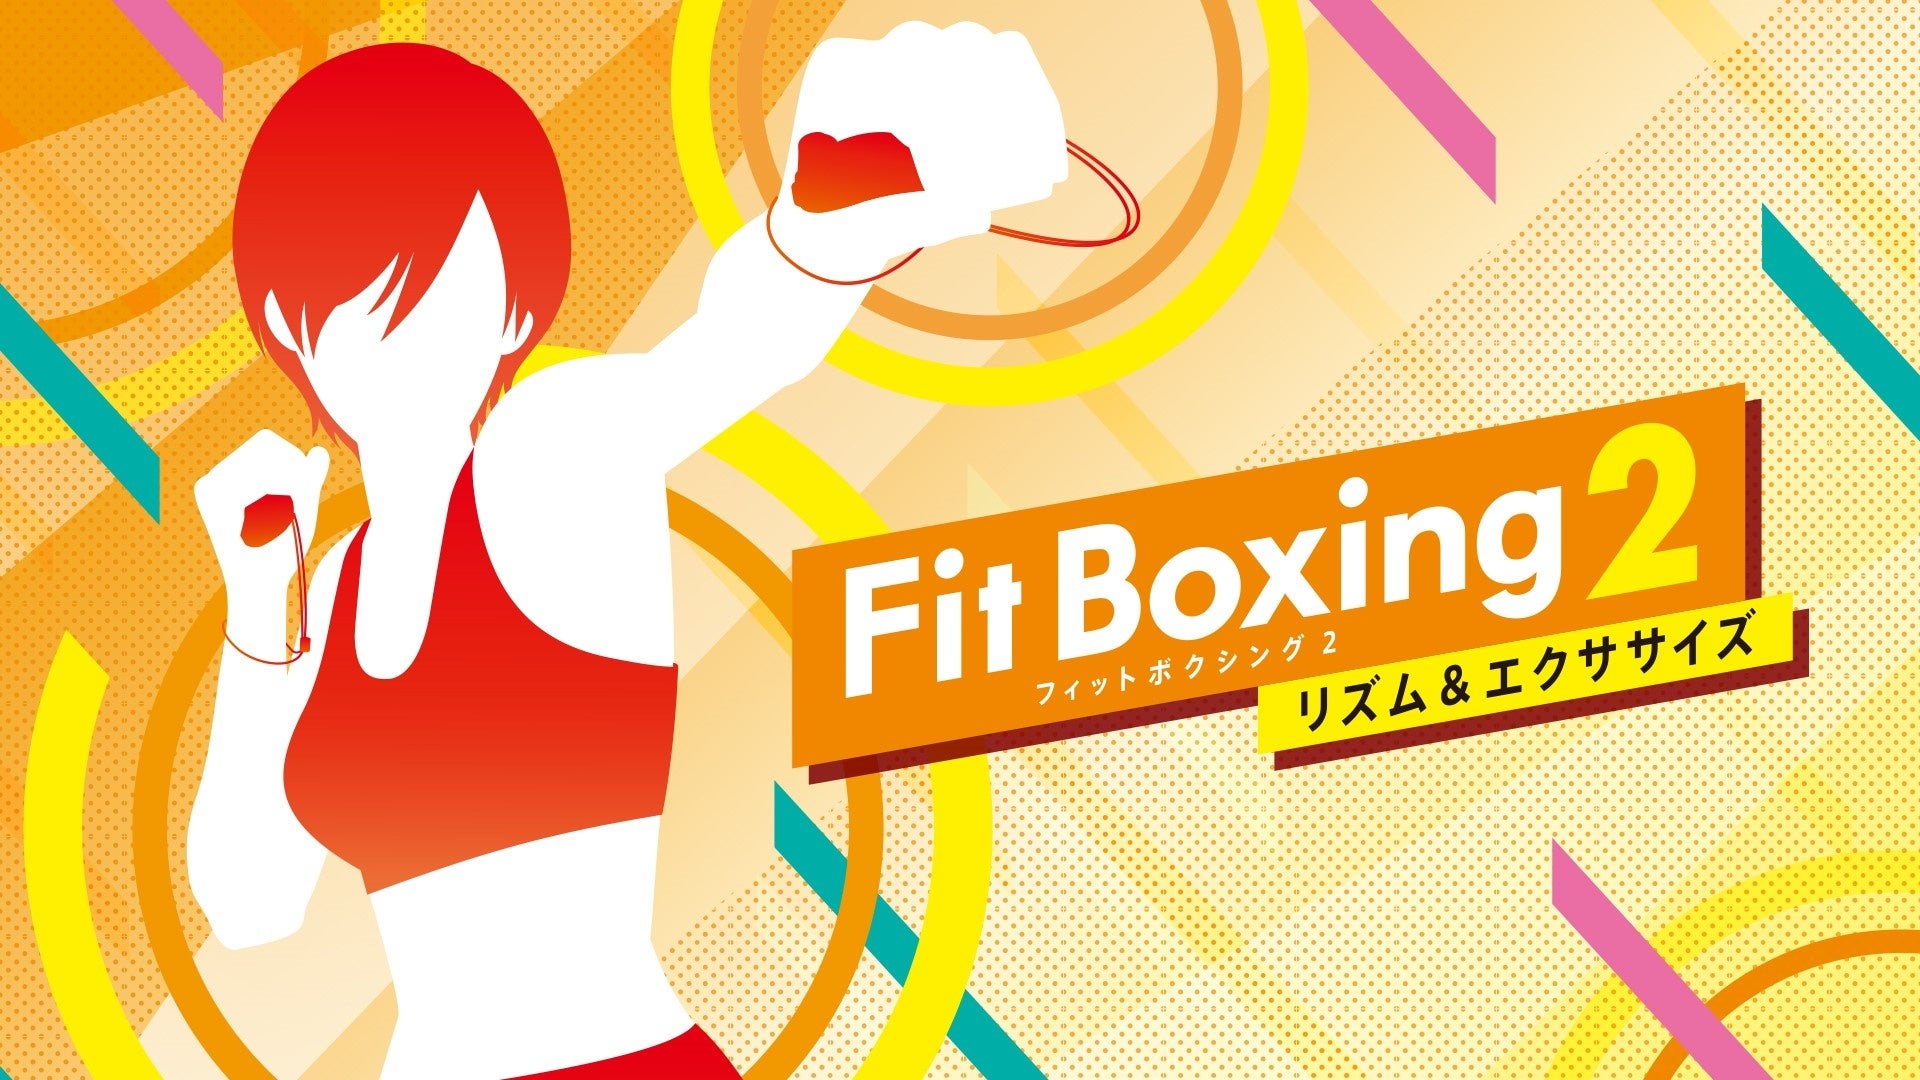 横浜流星さん主演映画『線は、僕を描く』×「Fit Boxing 2」コラボビジュアル公開とタイアップキャンペーン開催のお知らせ